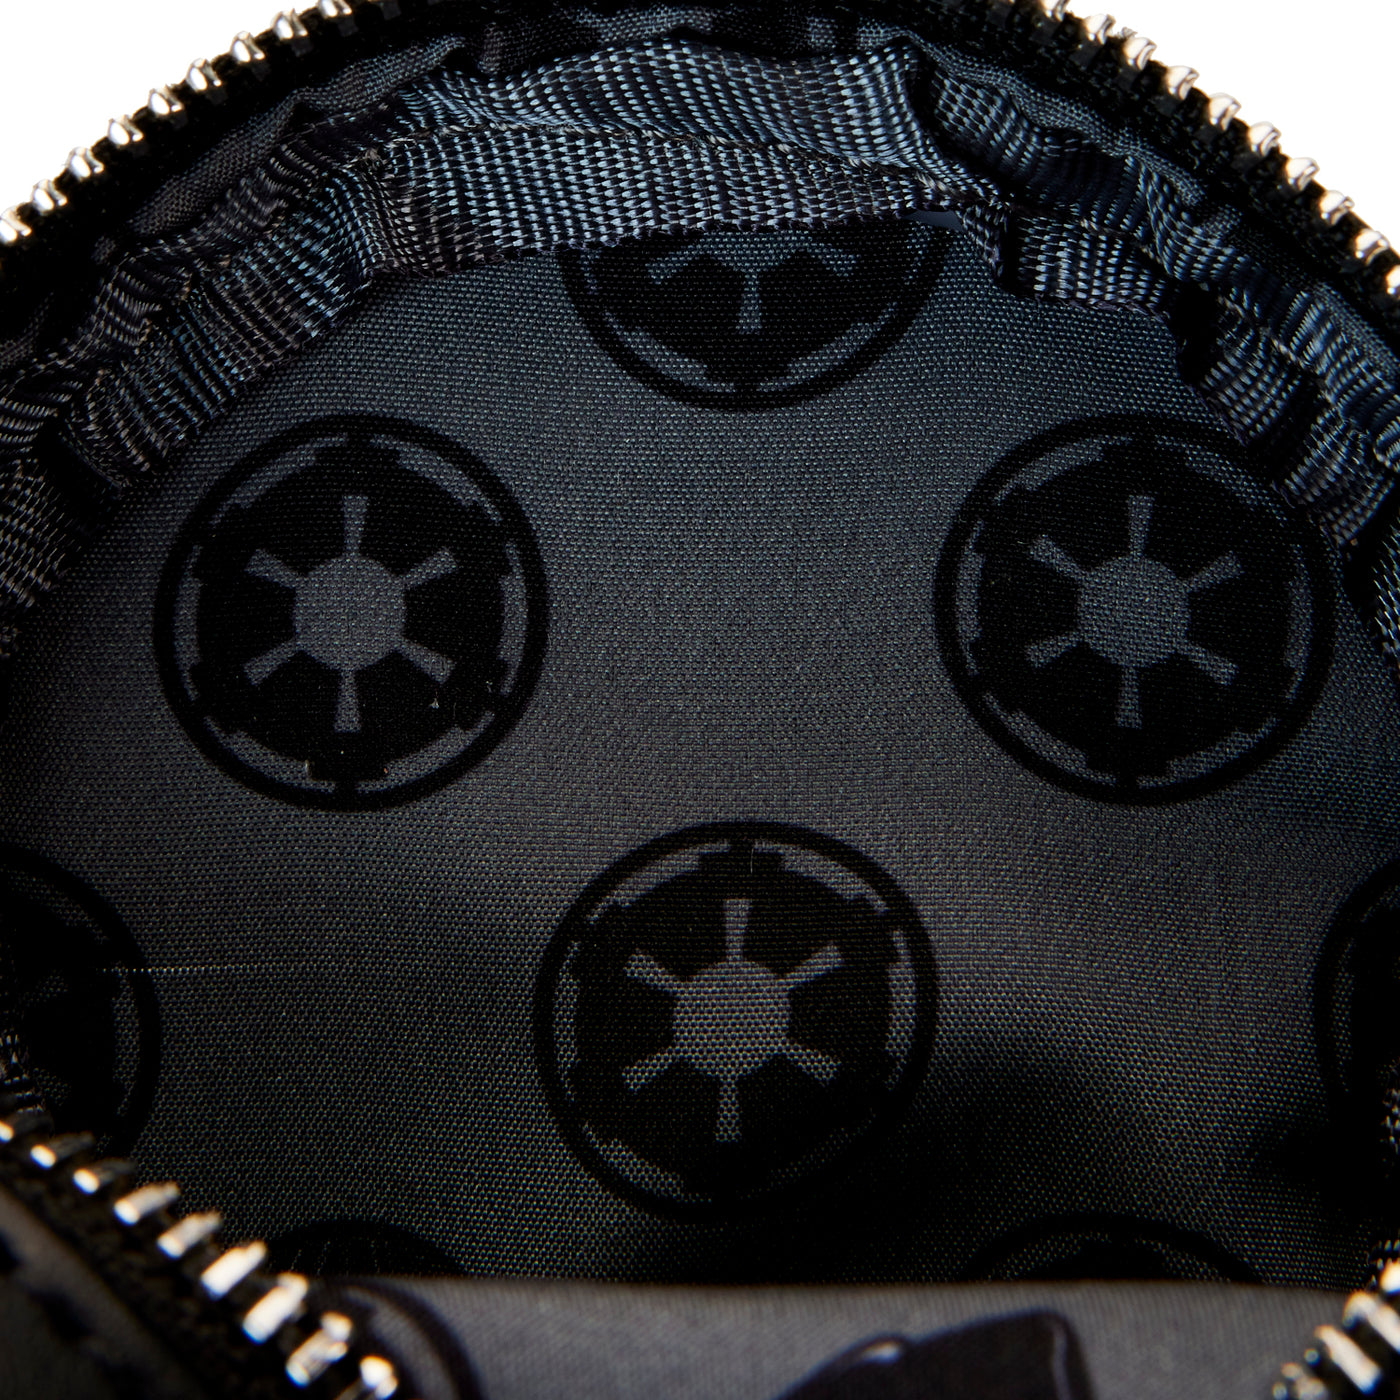 Star Wars Death Star Cosplay Treat Bag